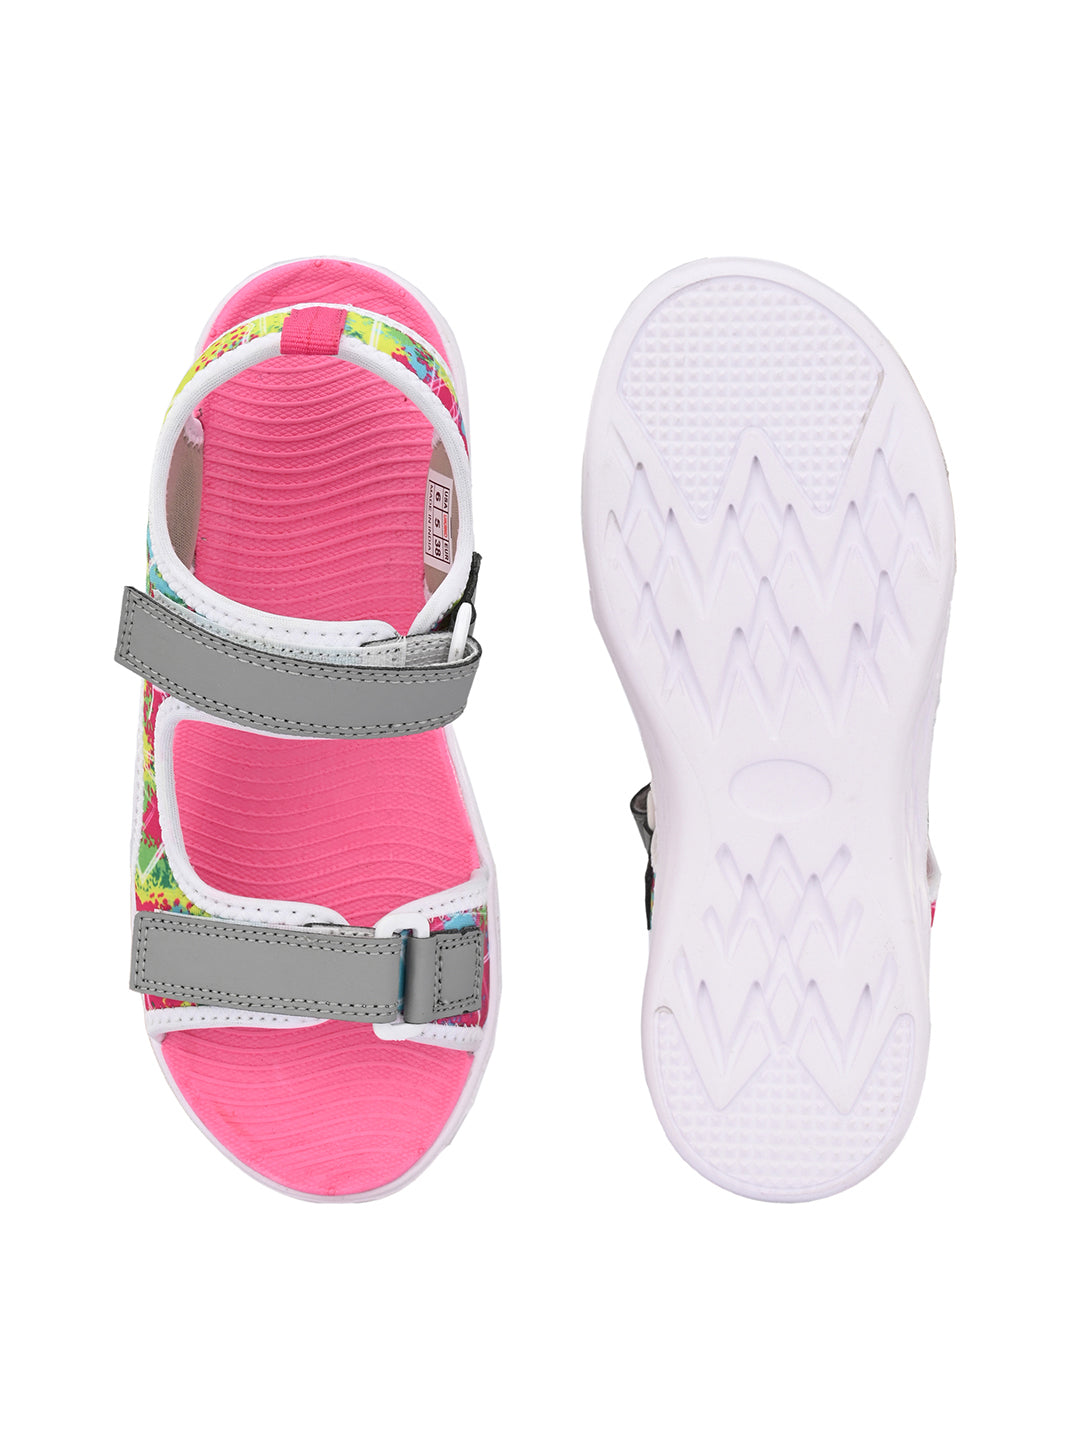 KAITHY Women Sandals & Sliders